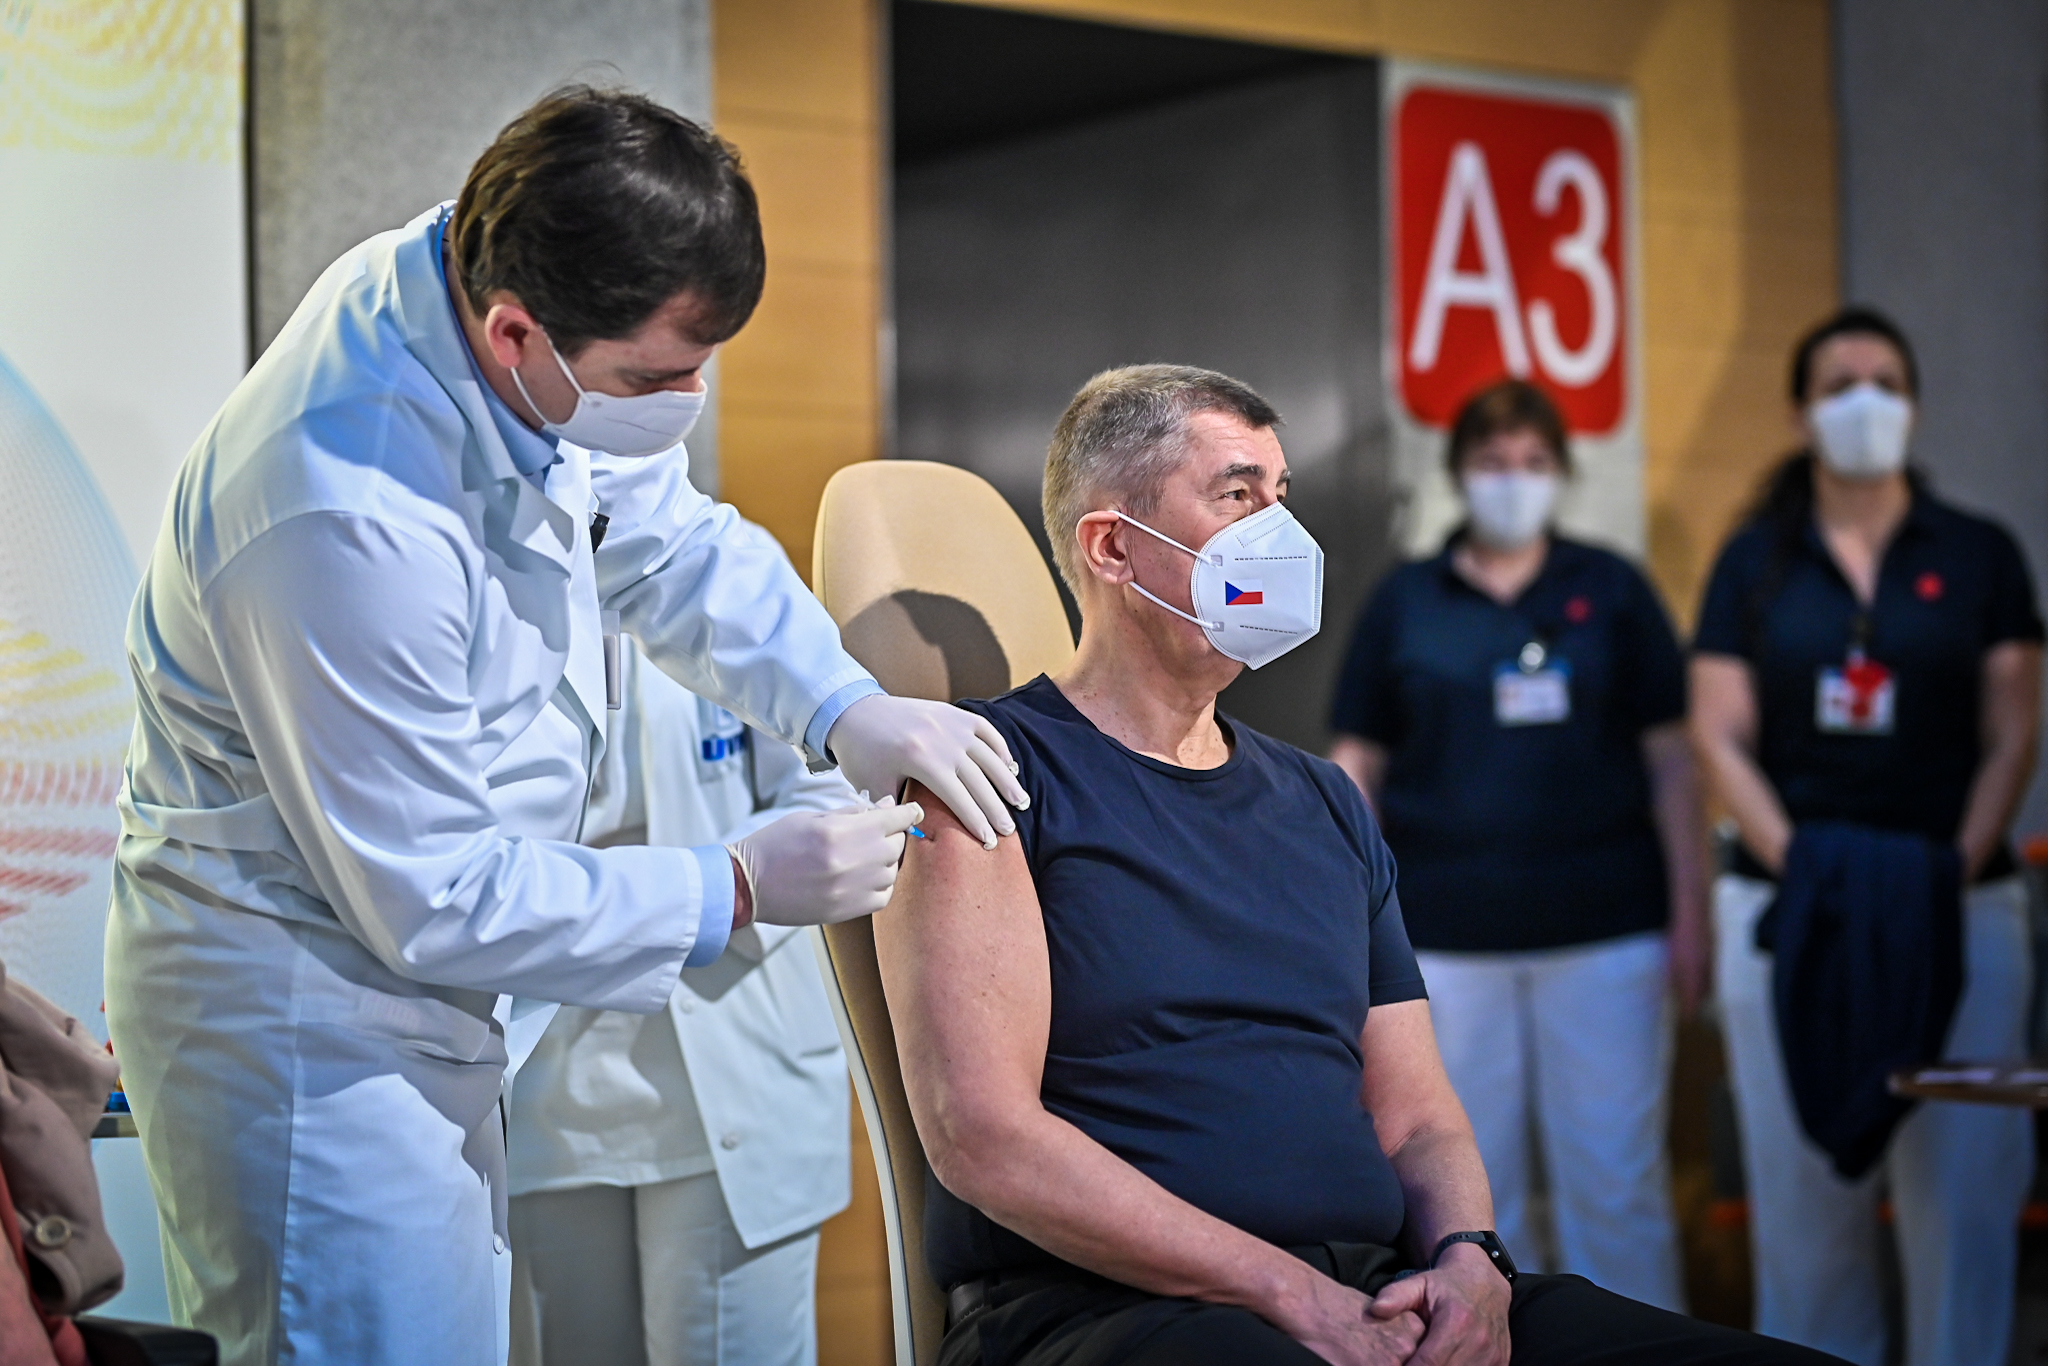 Премʼєр Чехії у прямому ефірі вакцинувався від коронавірусу